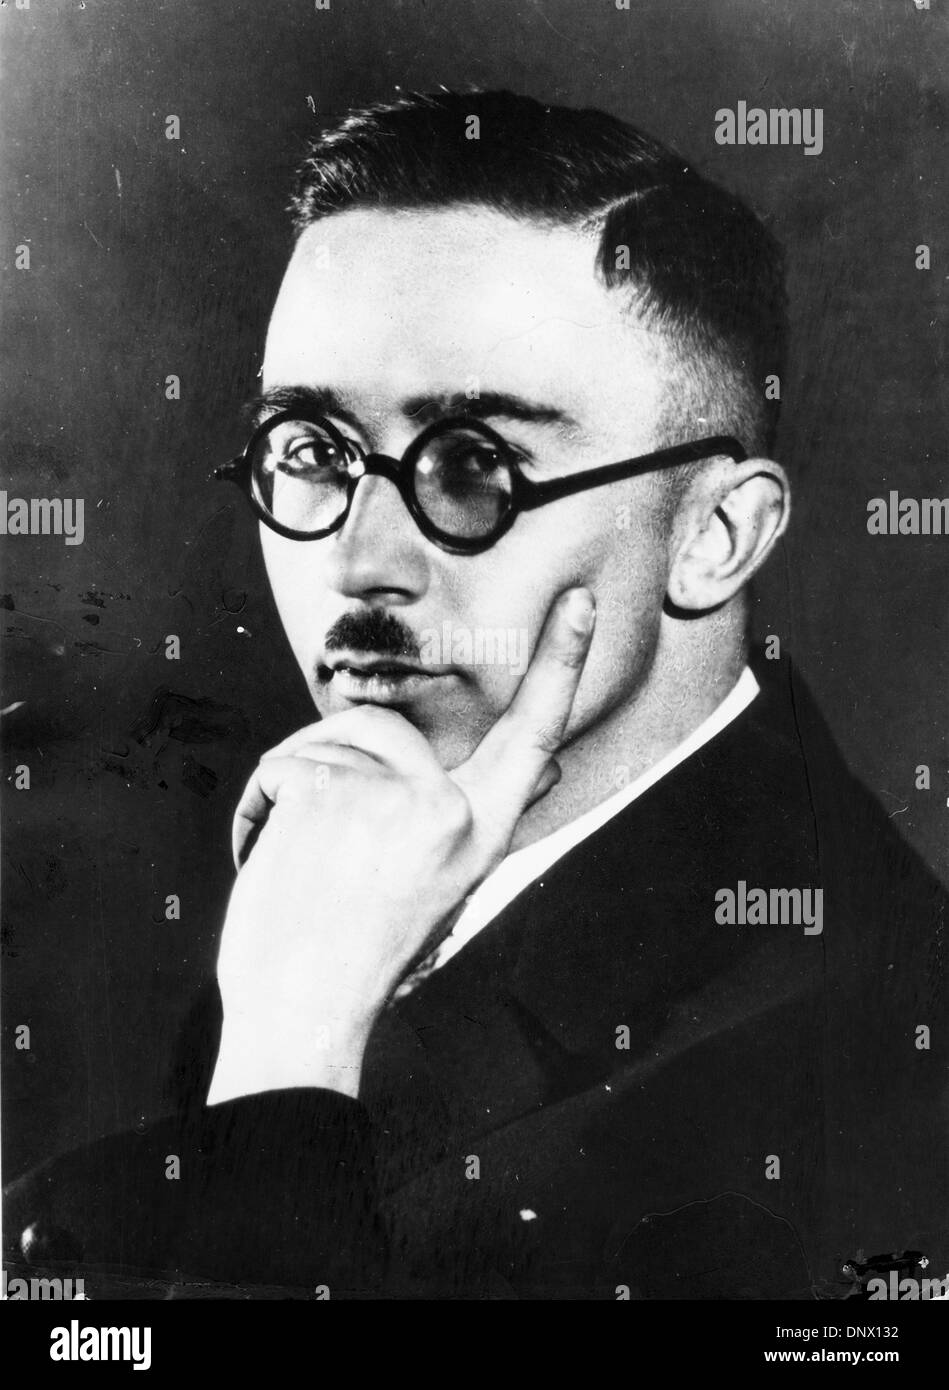 4 aprile 1929 - Monaco di Baviera, Germania - Heinrich Himmler (Ottobre 7, 1900-Maggio 23, 1945) era un comandante militare e leader del partito nazista, nonché Reichsfuhrer delle SS. (Credito Immagine: © Keystone foto/ZUMAPRESS.com) Foto Stock